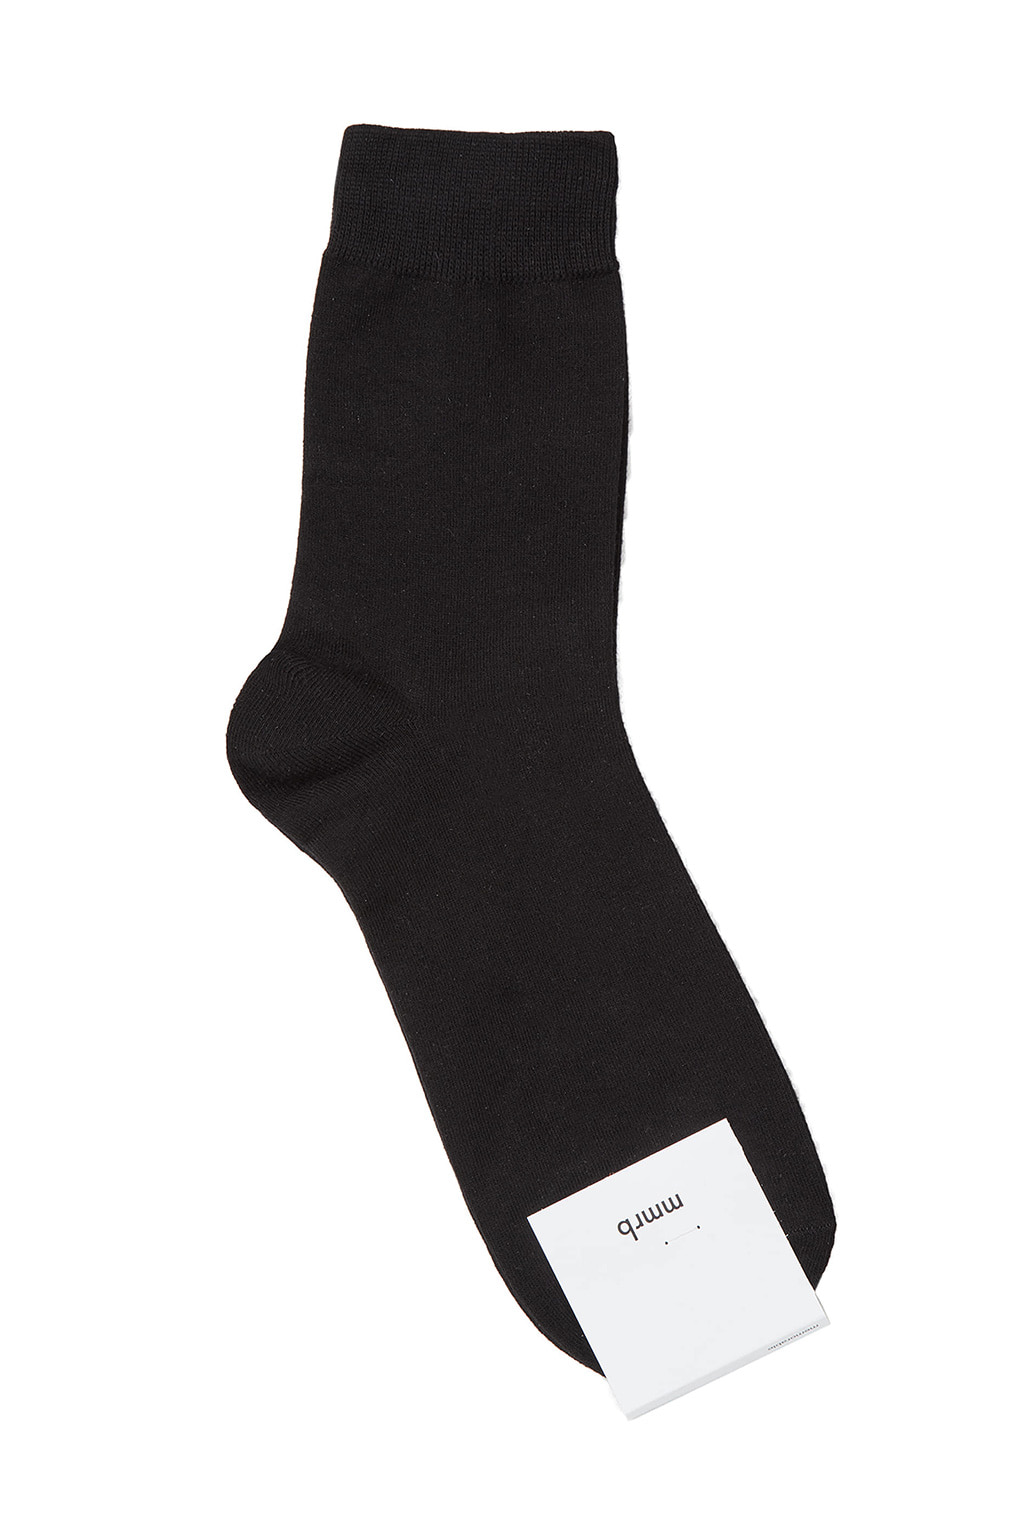 mmrb socks (bk)